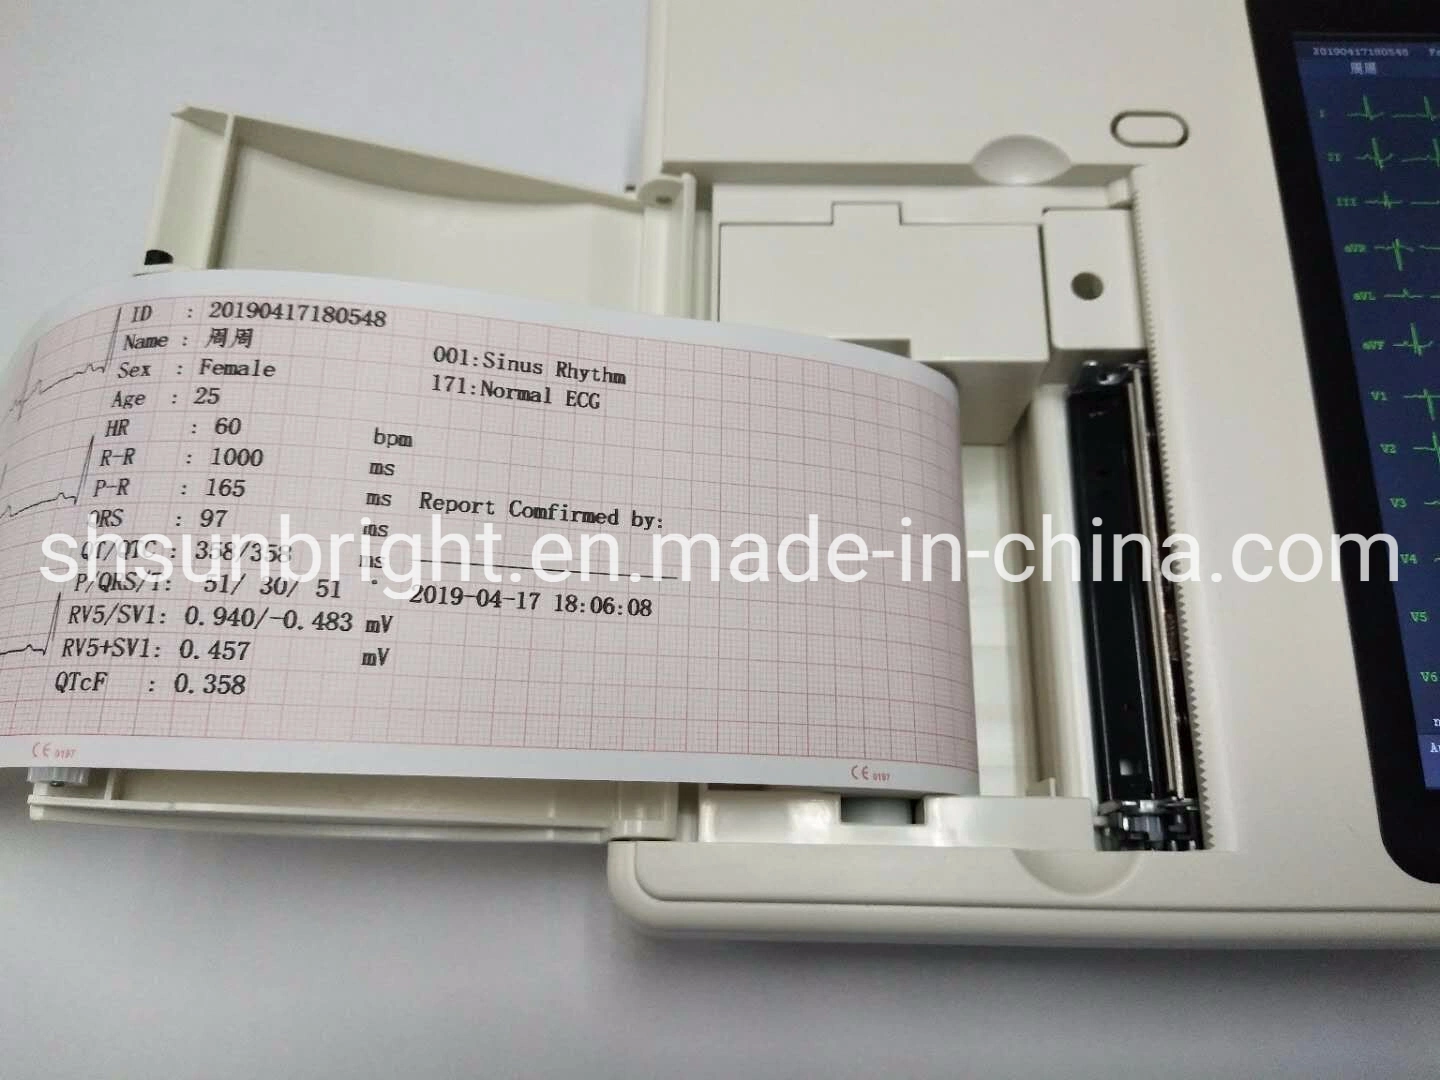 Equipo portátil de ECG Holter de 12 derivaciones digital para UCI hospitalaria con Impresora